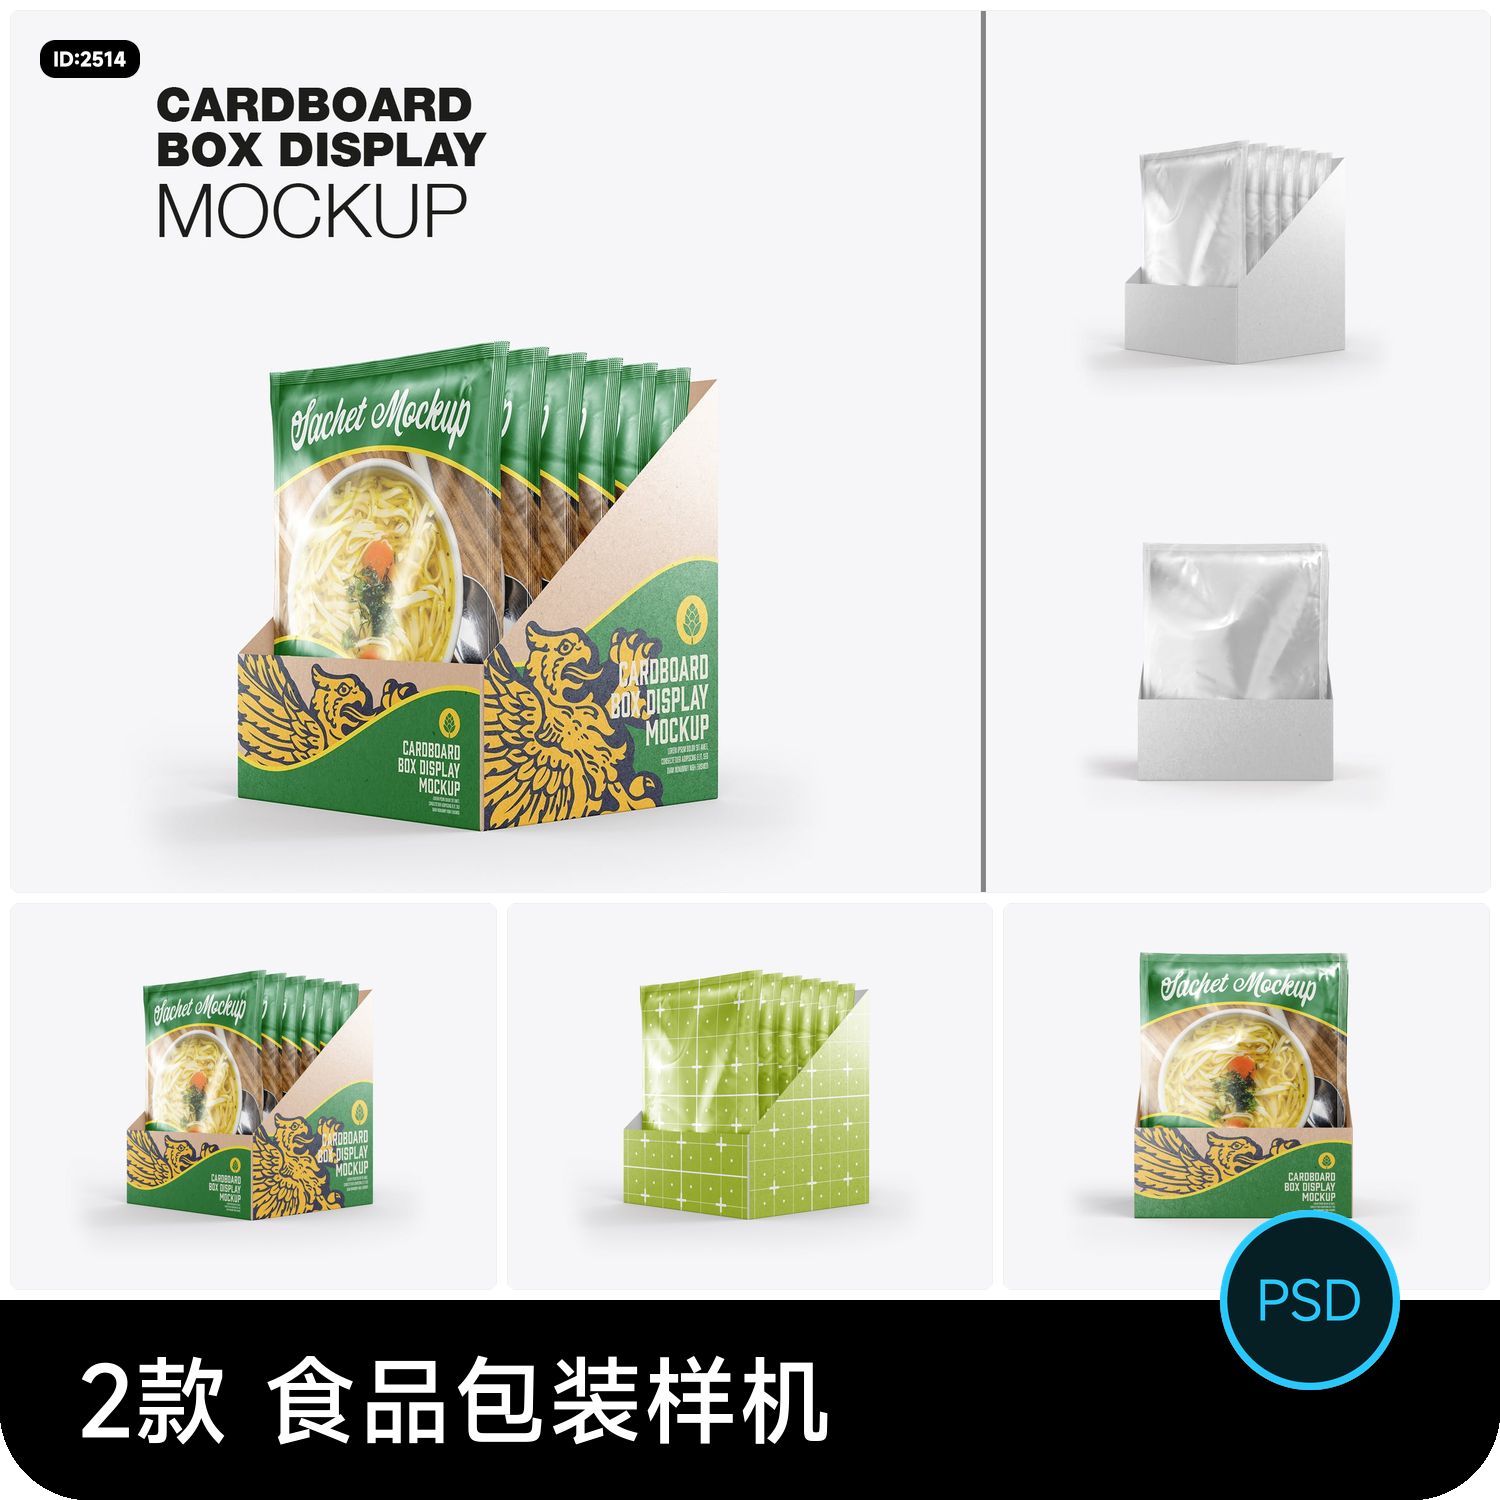 食品调料铝牌包装袋纸盒装展示效果vi智能贴图样机psd设计素材